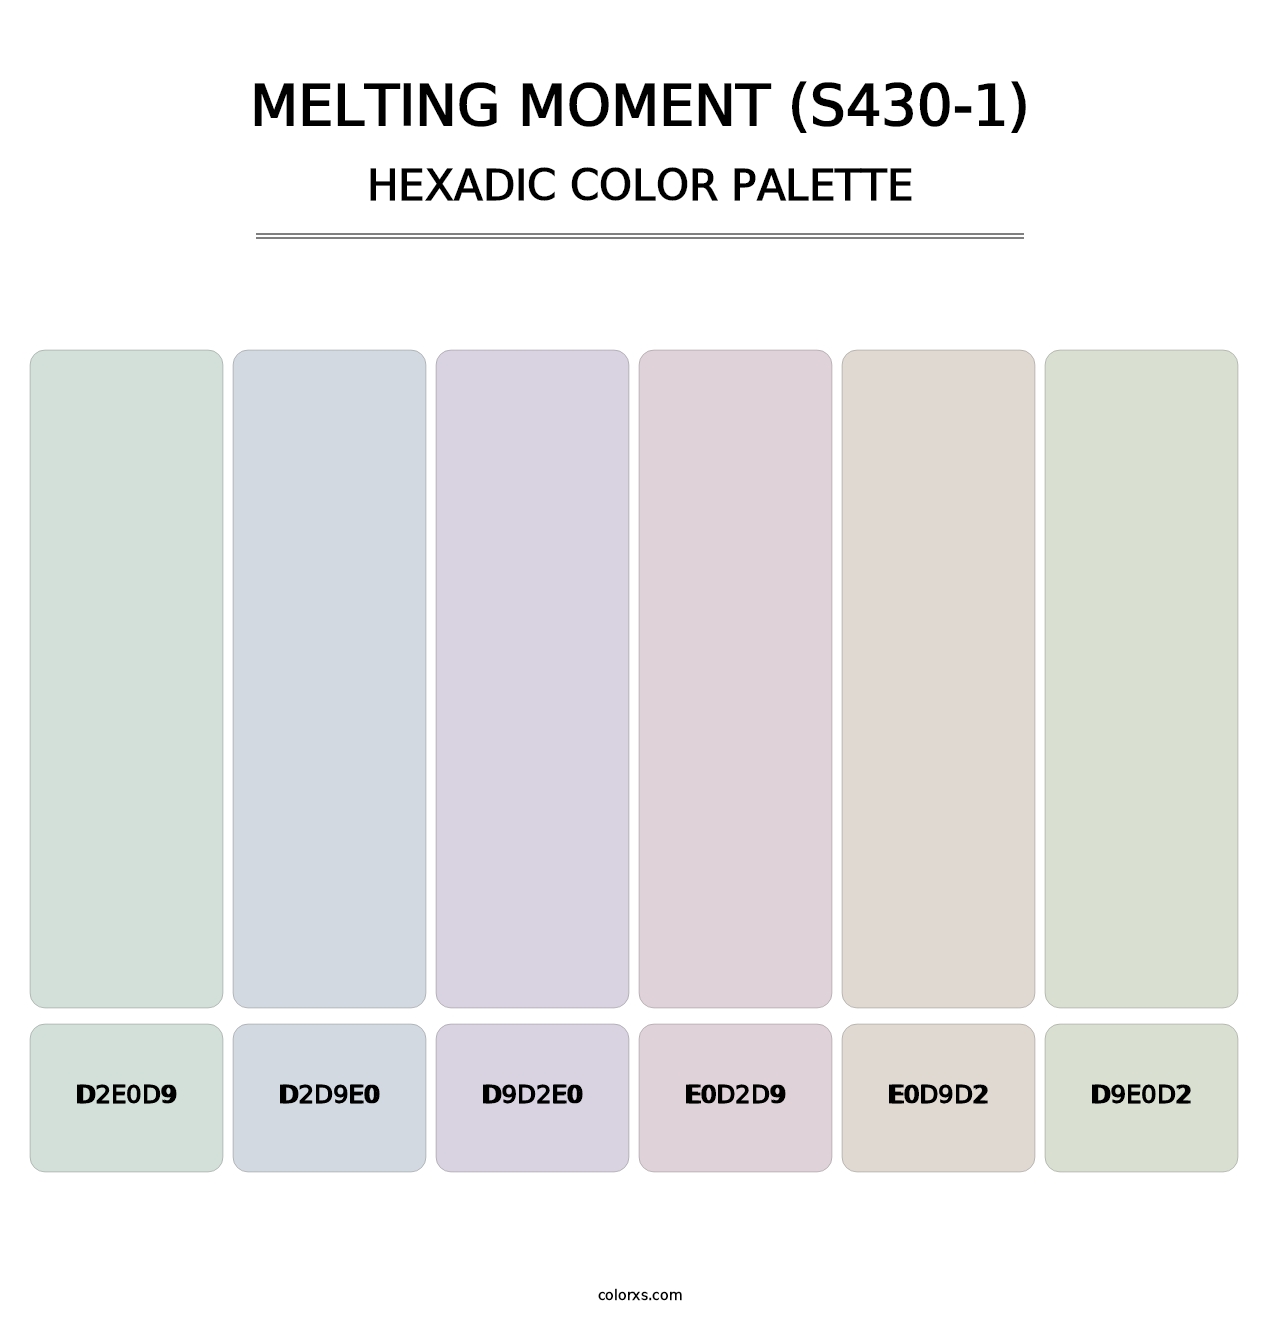 Melting Moment (S430-1) - Hexadic Color Palette